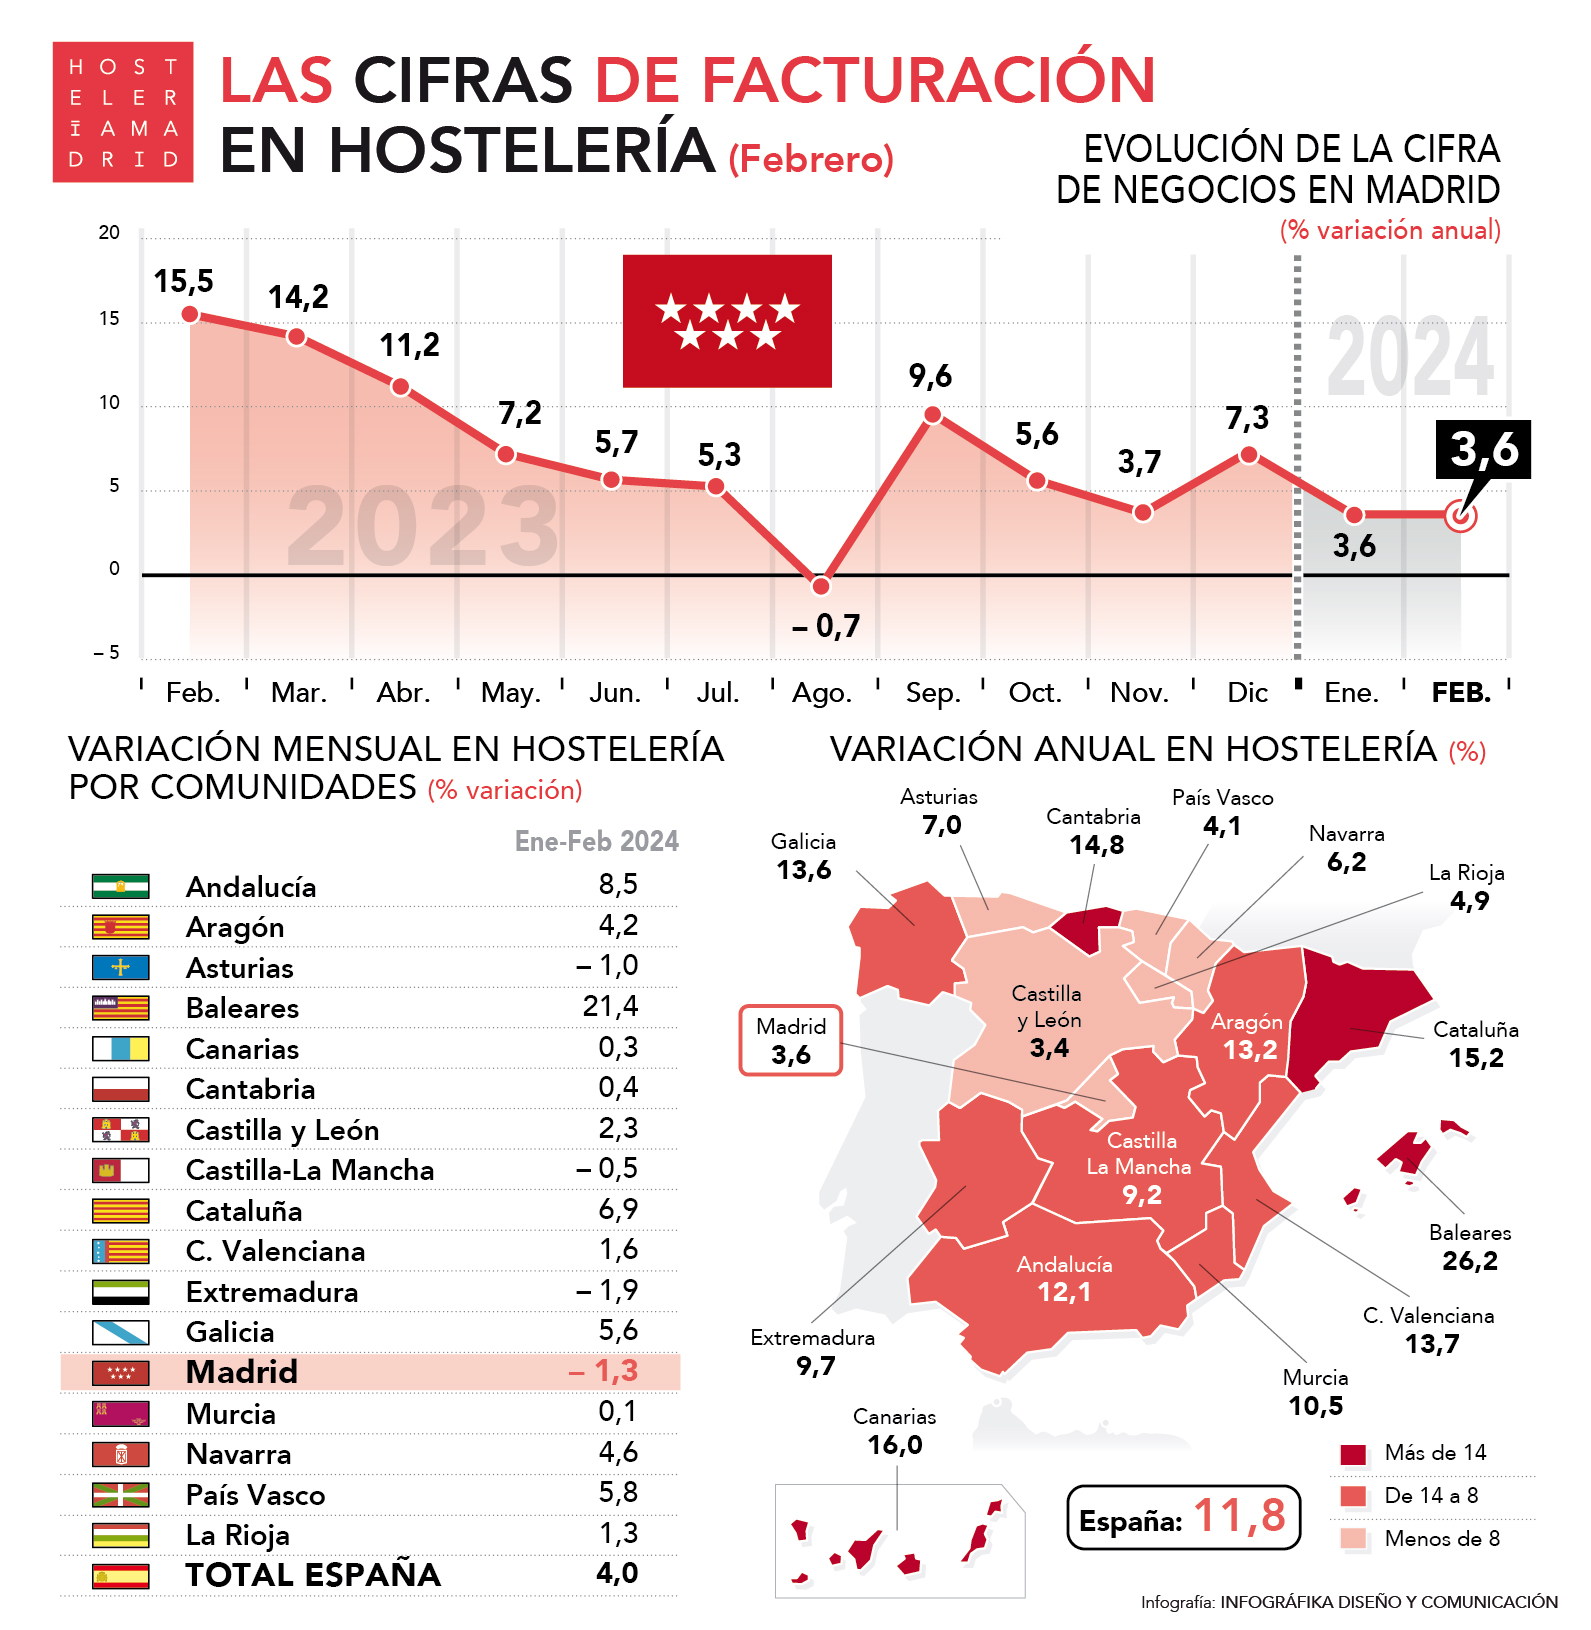 La facturación de la hostelería aumenta en Madrid un 3,6% en febrero respecto al mismo mes del año anterior - La Viña